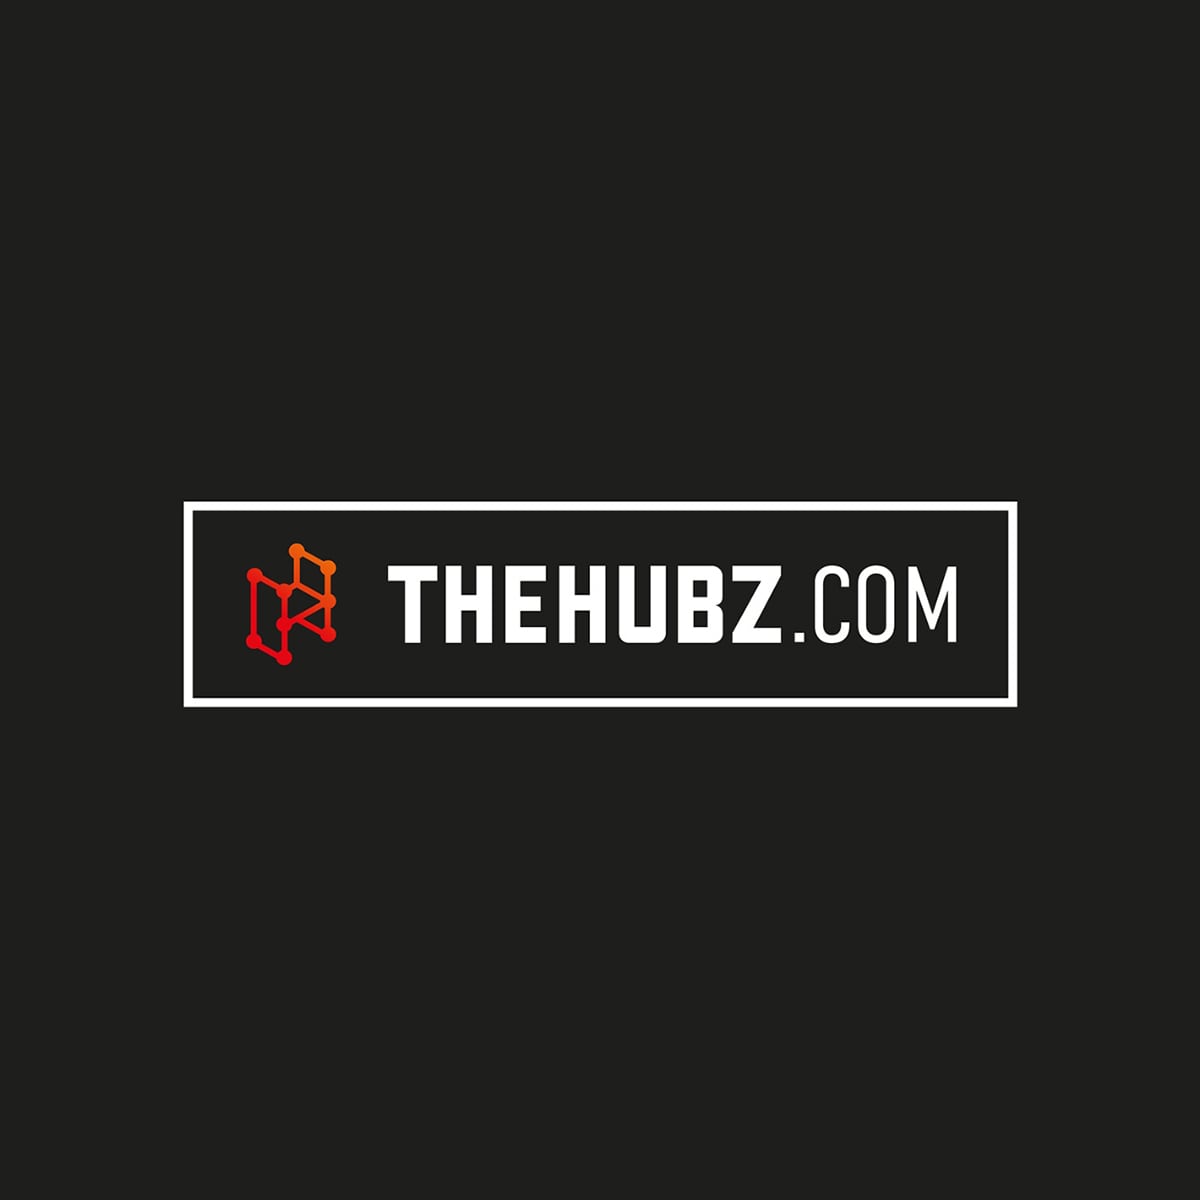 Serviceplan Group lance THEHUBZ.COM, une nouvelle plateforme de production digitale internationale